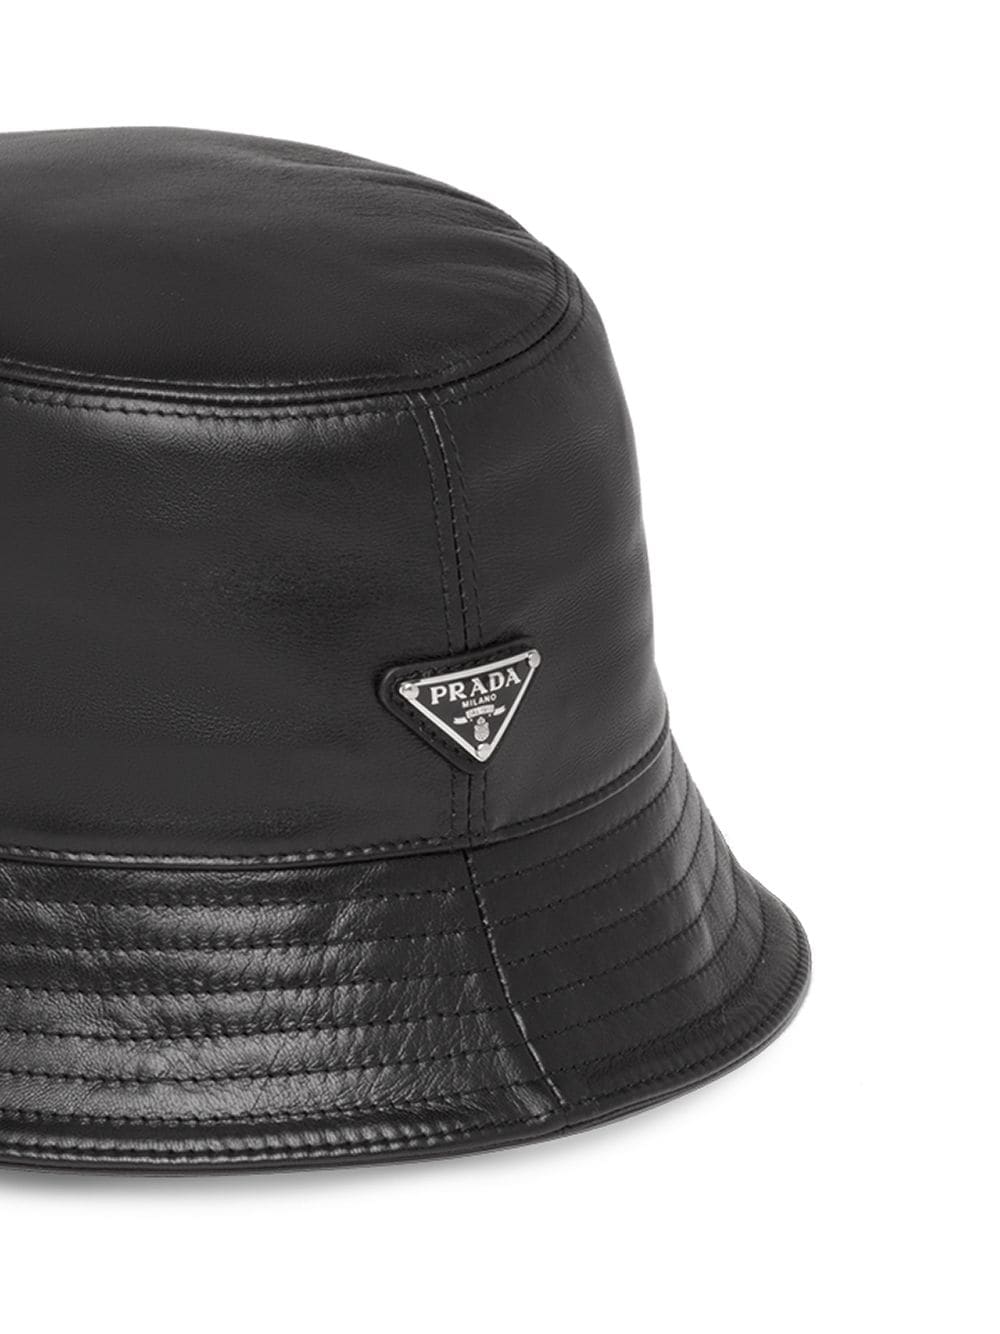 Prada Leather Bucket Hat - Farfetch